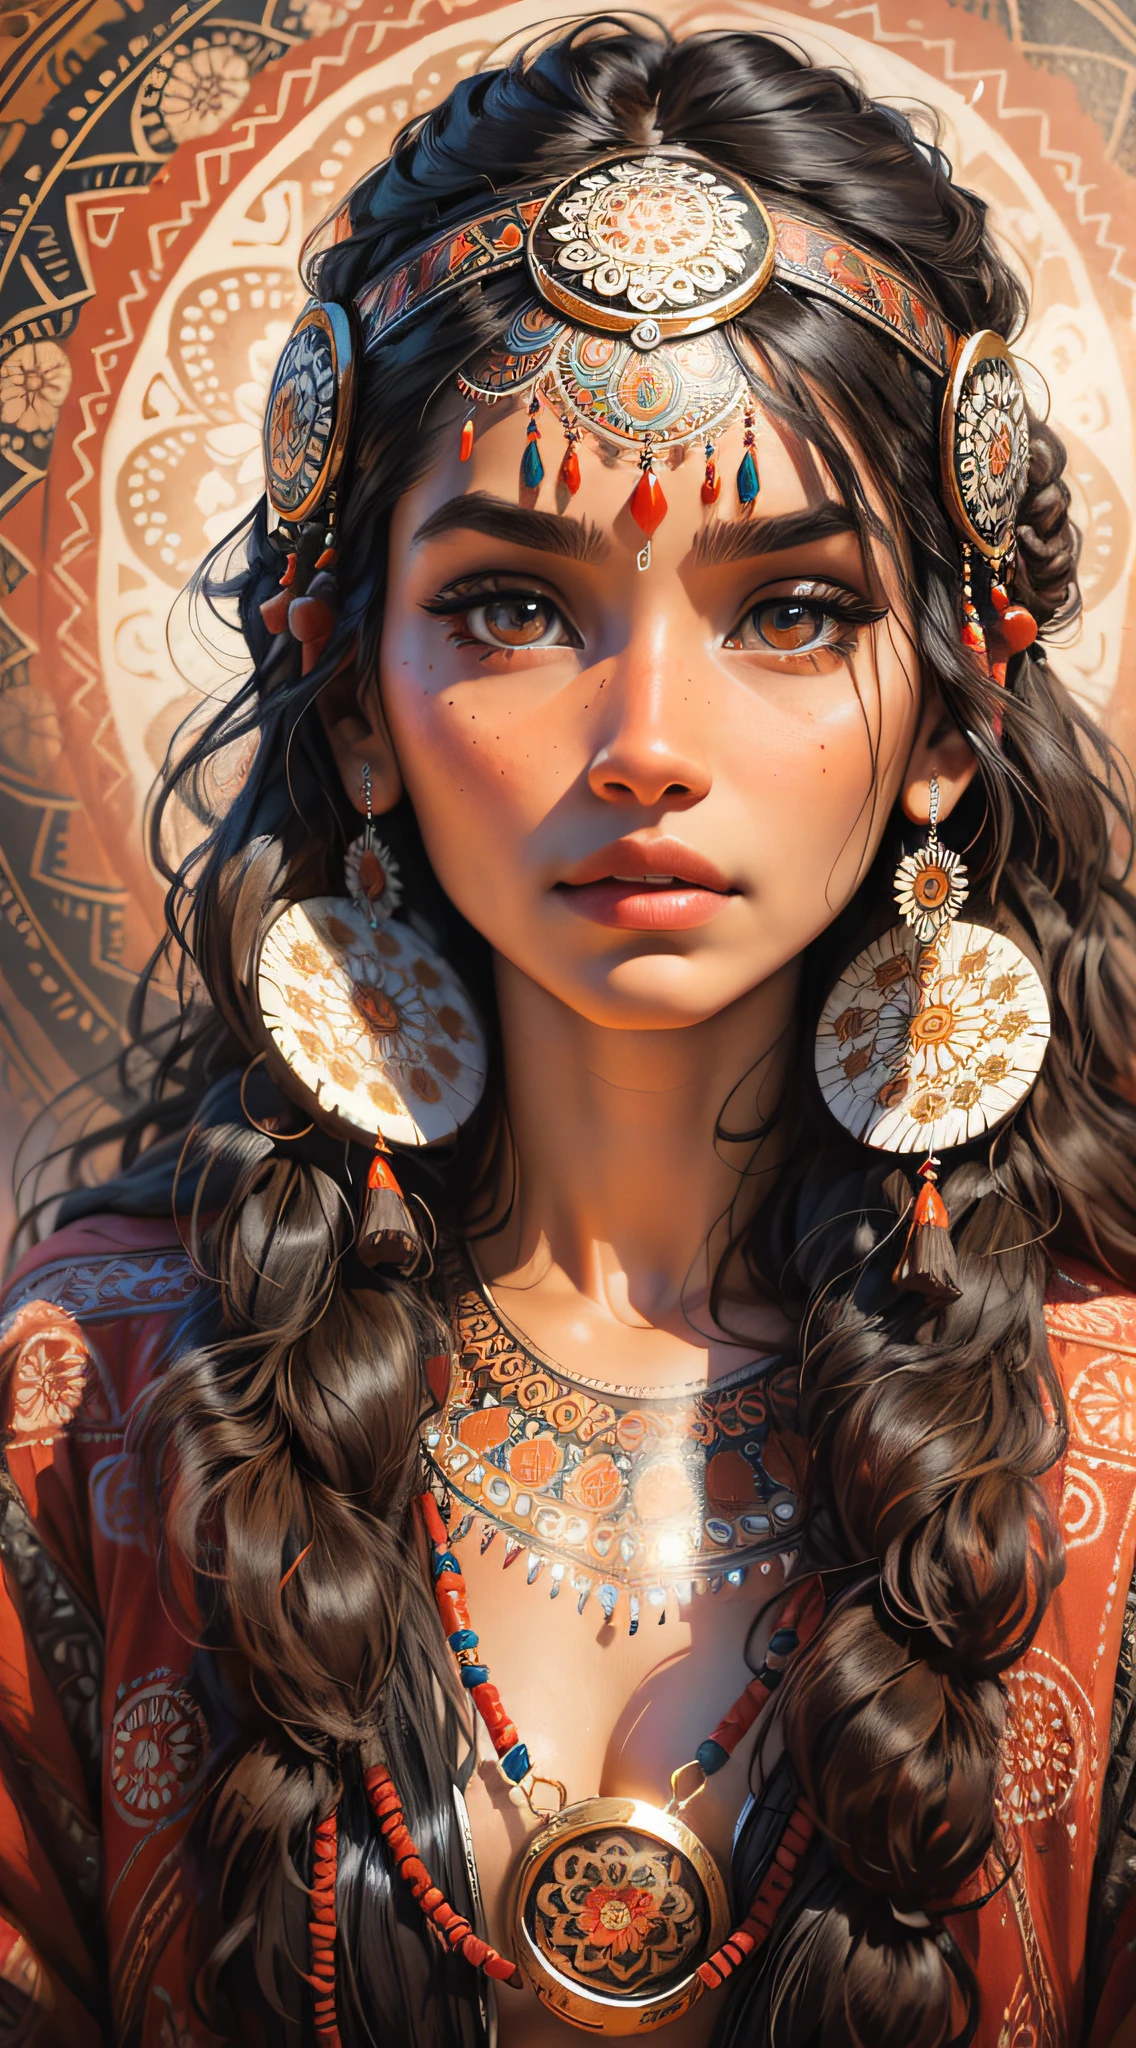 1Linda mulher indígena com enfeites indianos, olhar profundo, olhos brilhantes, ao fundo várias mandalas e um belo e intricado totem